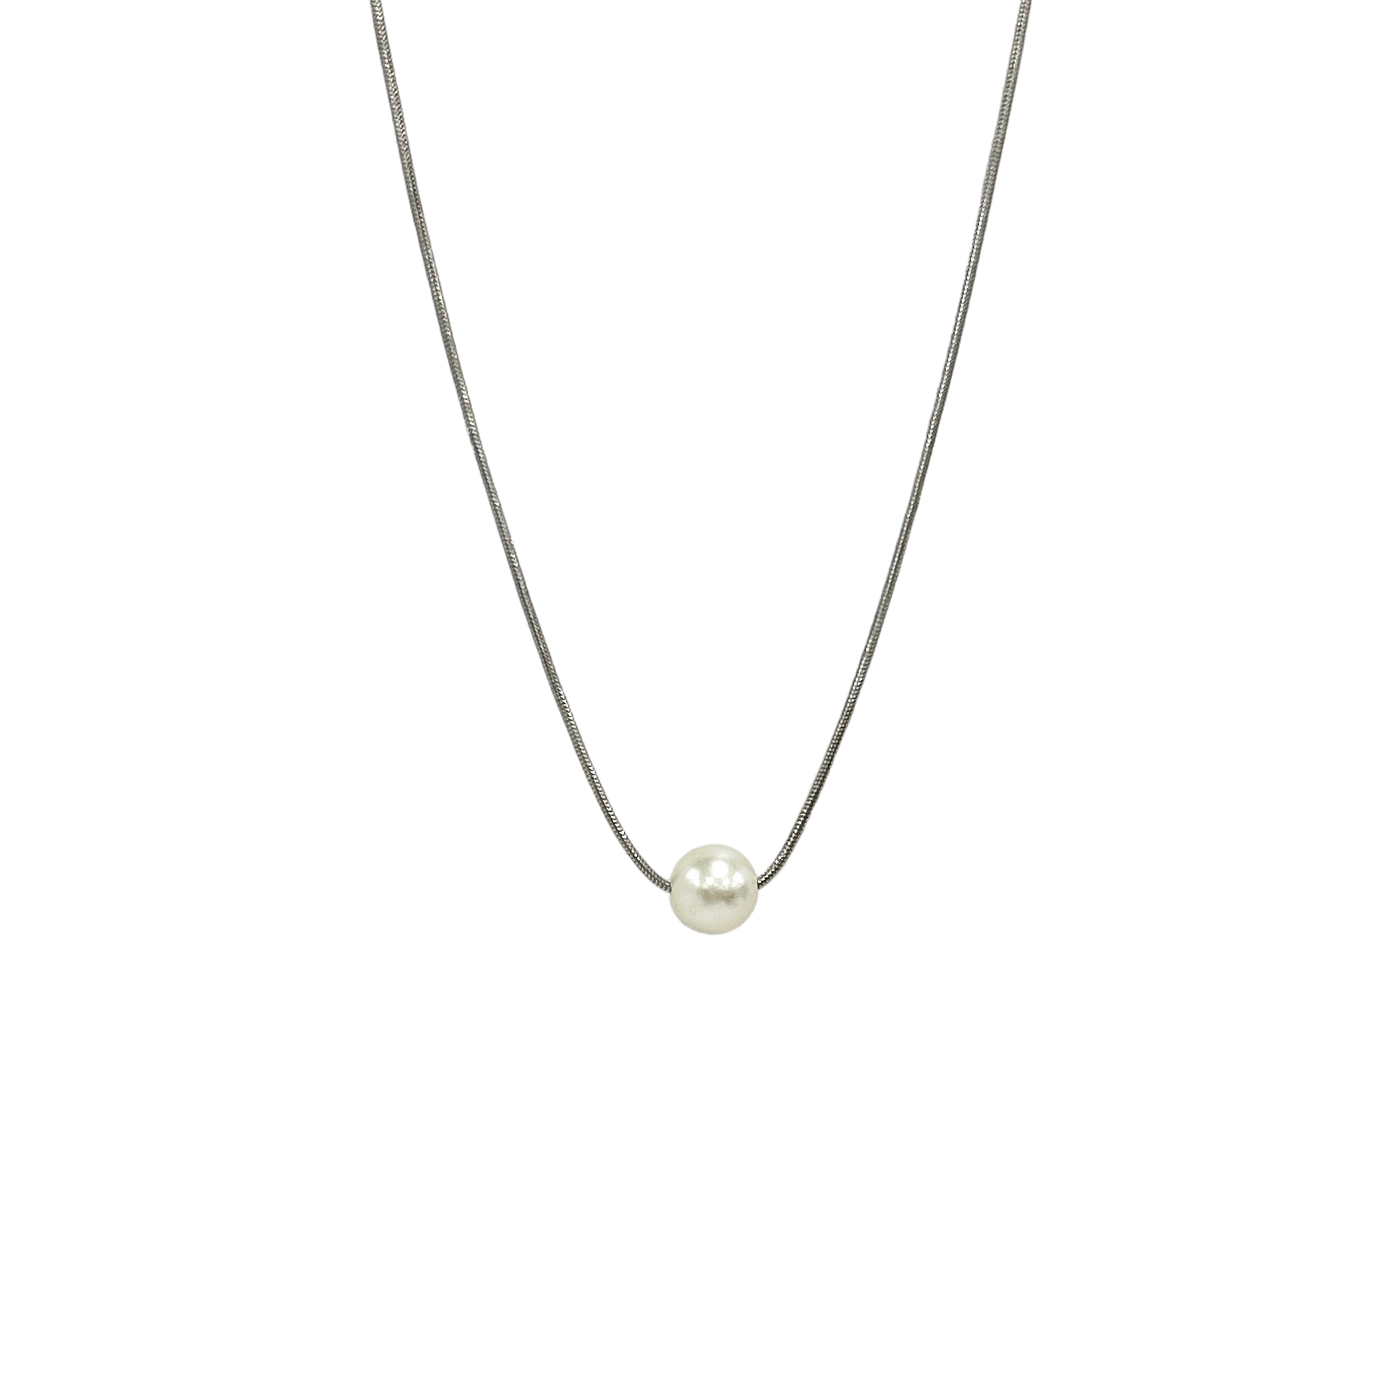 Avalon Pearl Necklace – Rustic Cuff